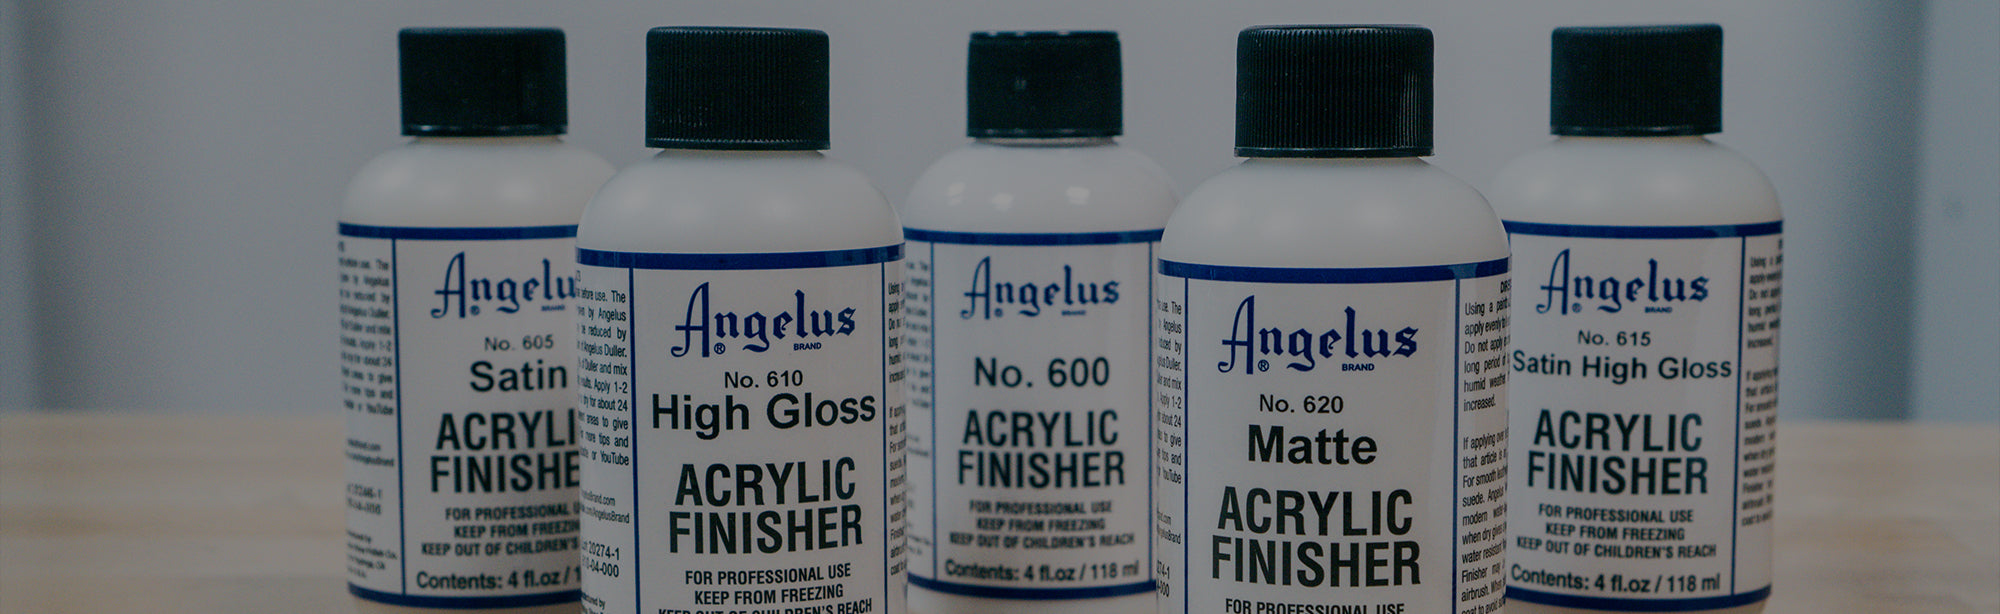 Angelus Acrylic Finisher